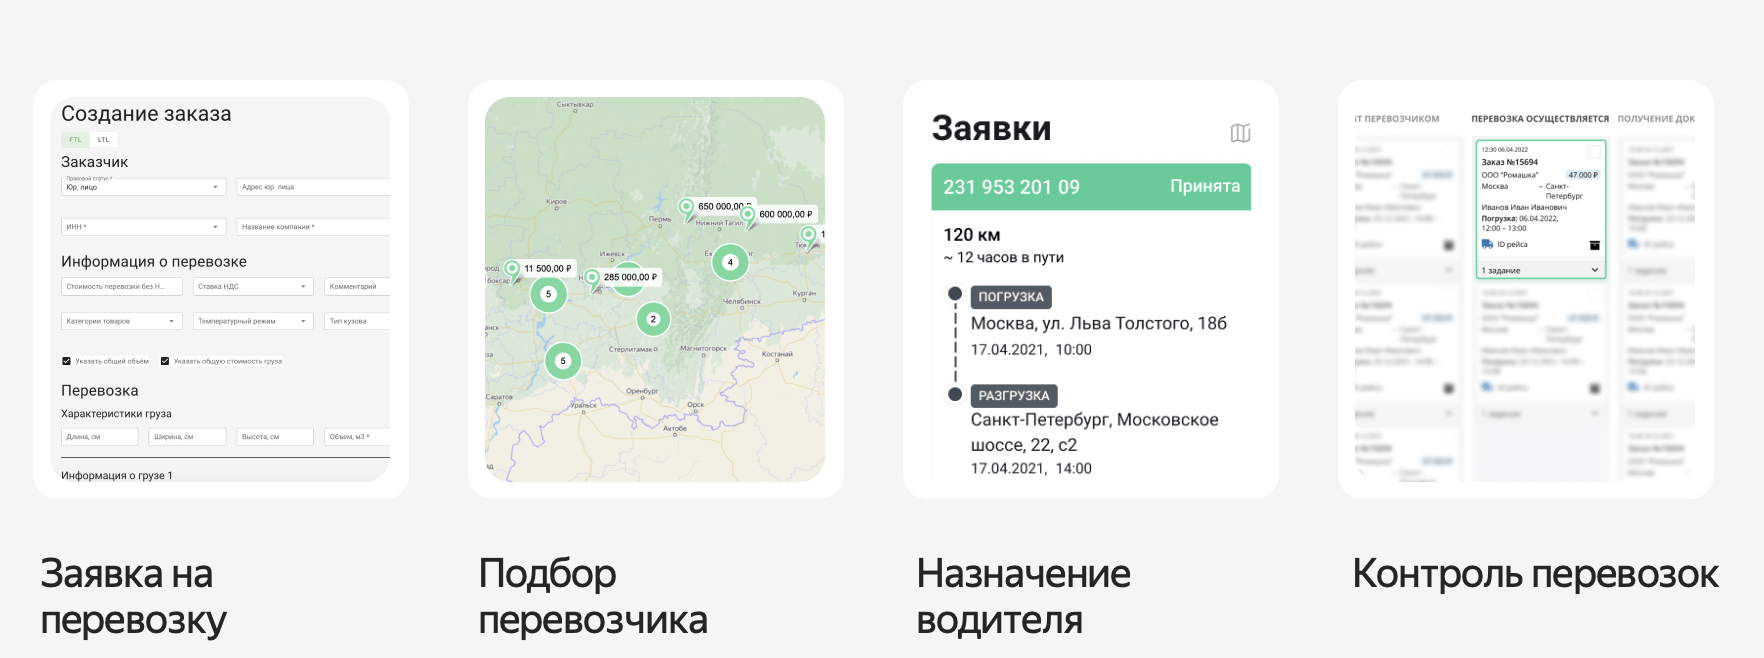 Яндекс Доставка запустила облачную платформу «Магистрали»